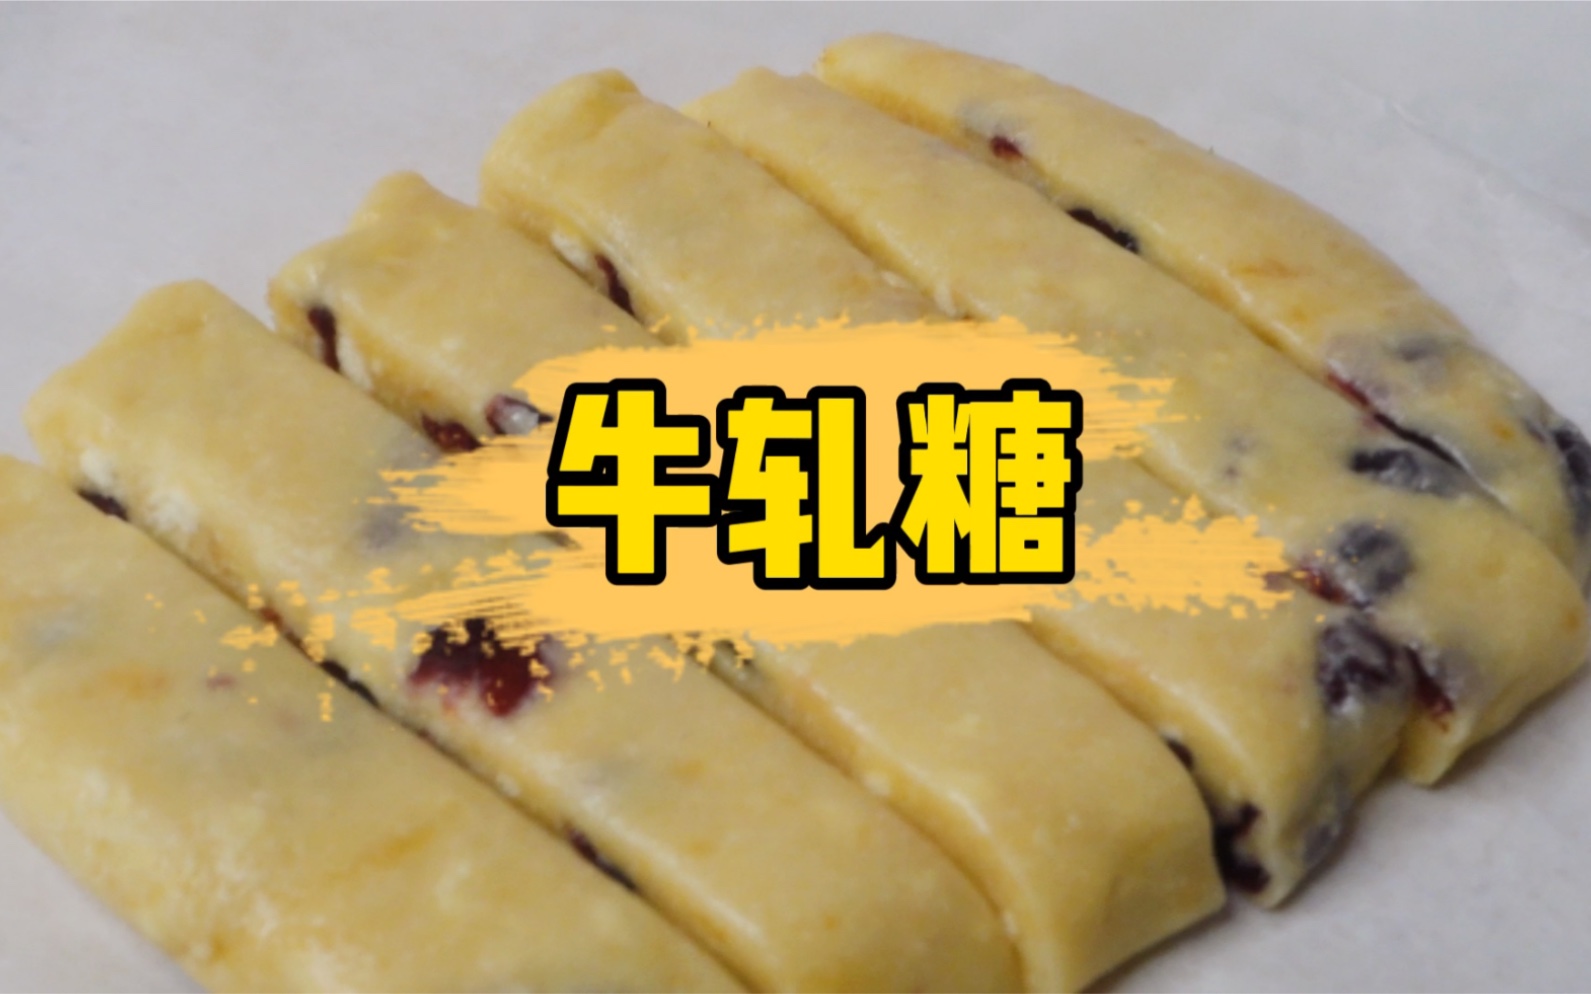 伝統の菓子「雪花糖」 - 小松経済新聞